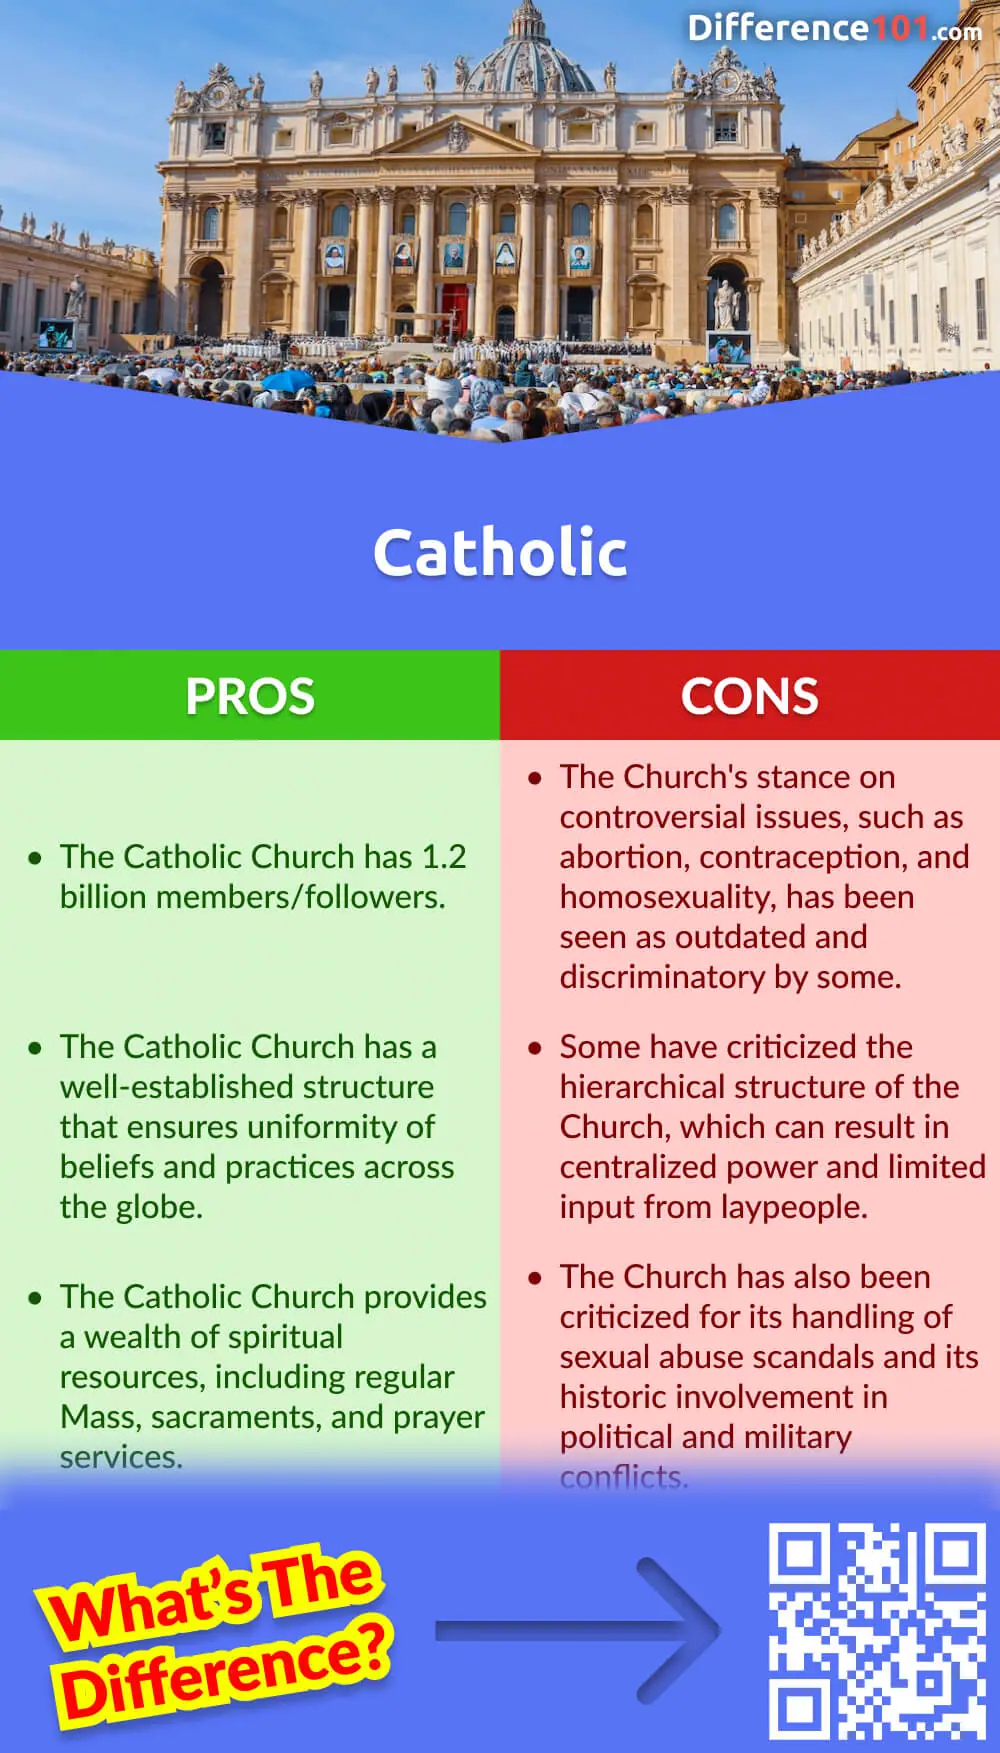 protestant vs catholic church